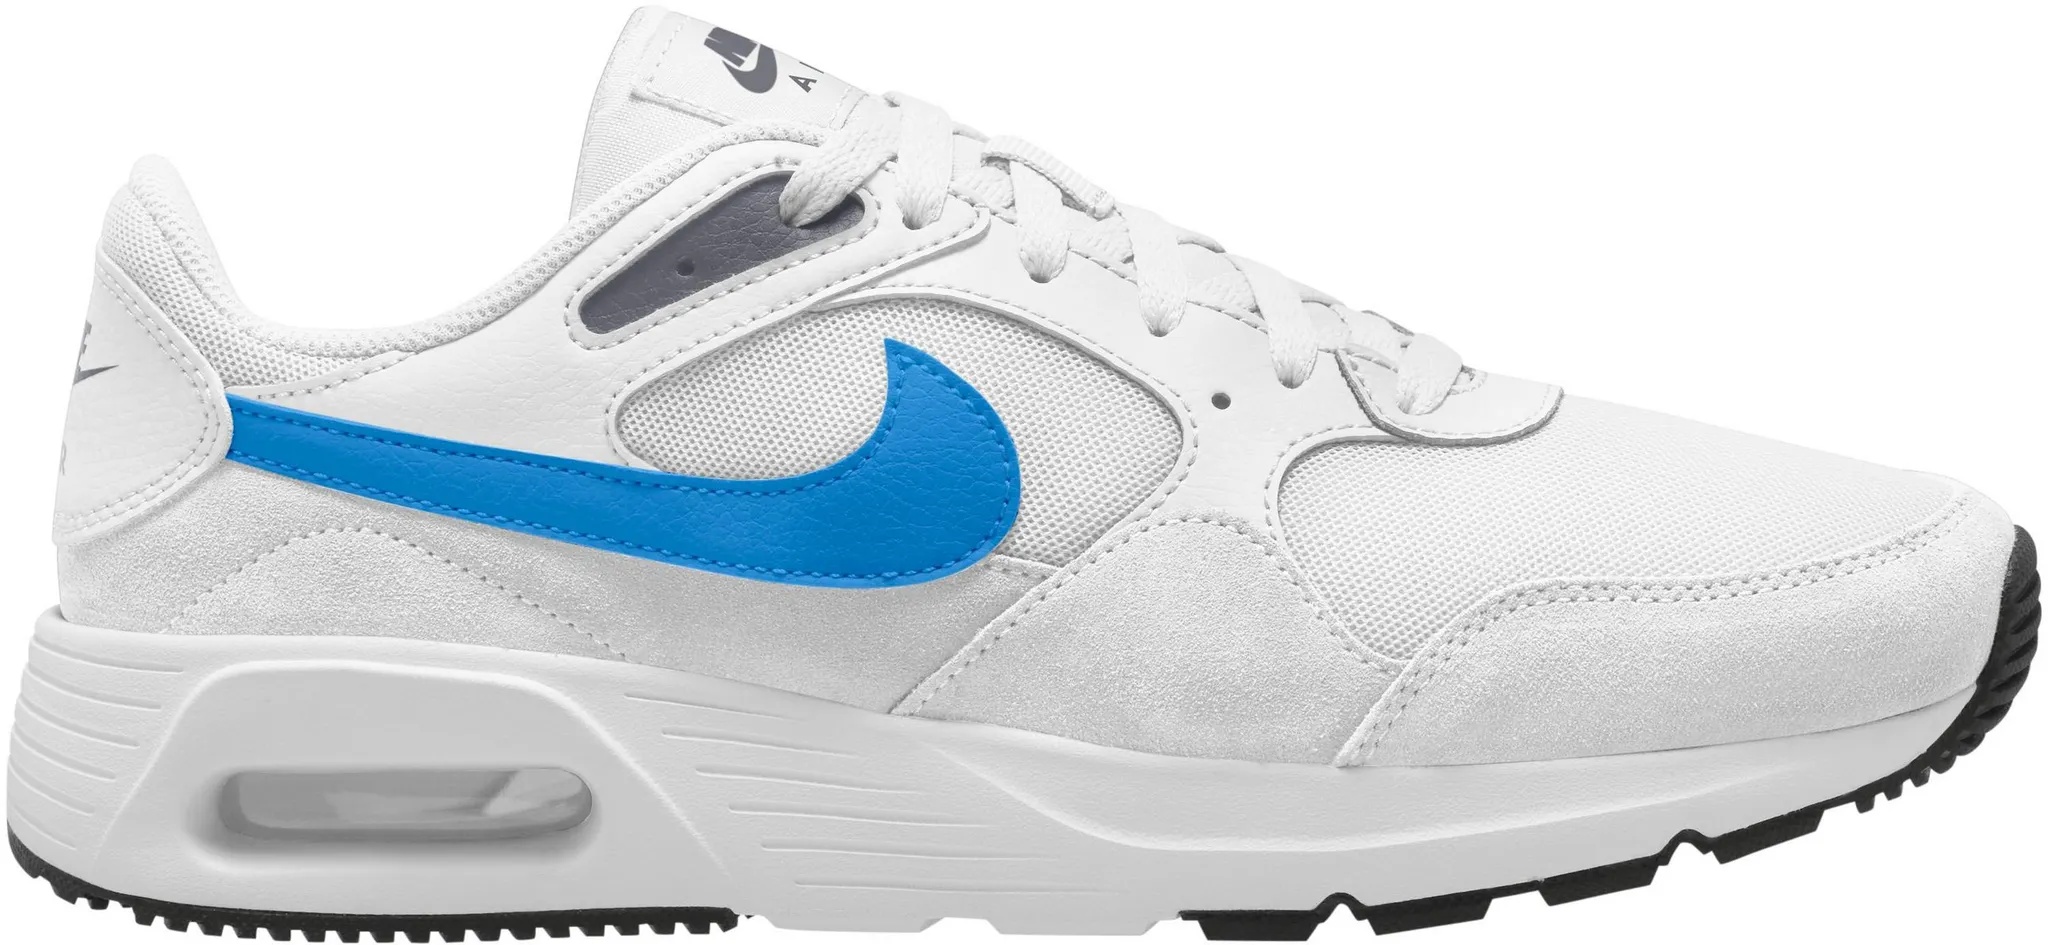 Nike Air Max SC Sneaker Herren in white-light photo blue-thunder blue-white, Größe 44 1/2